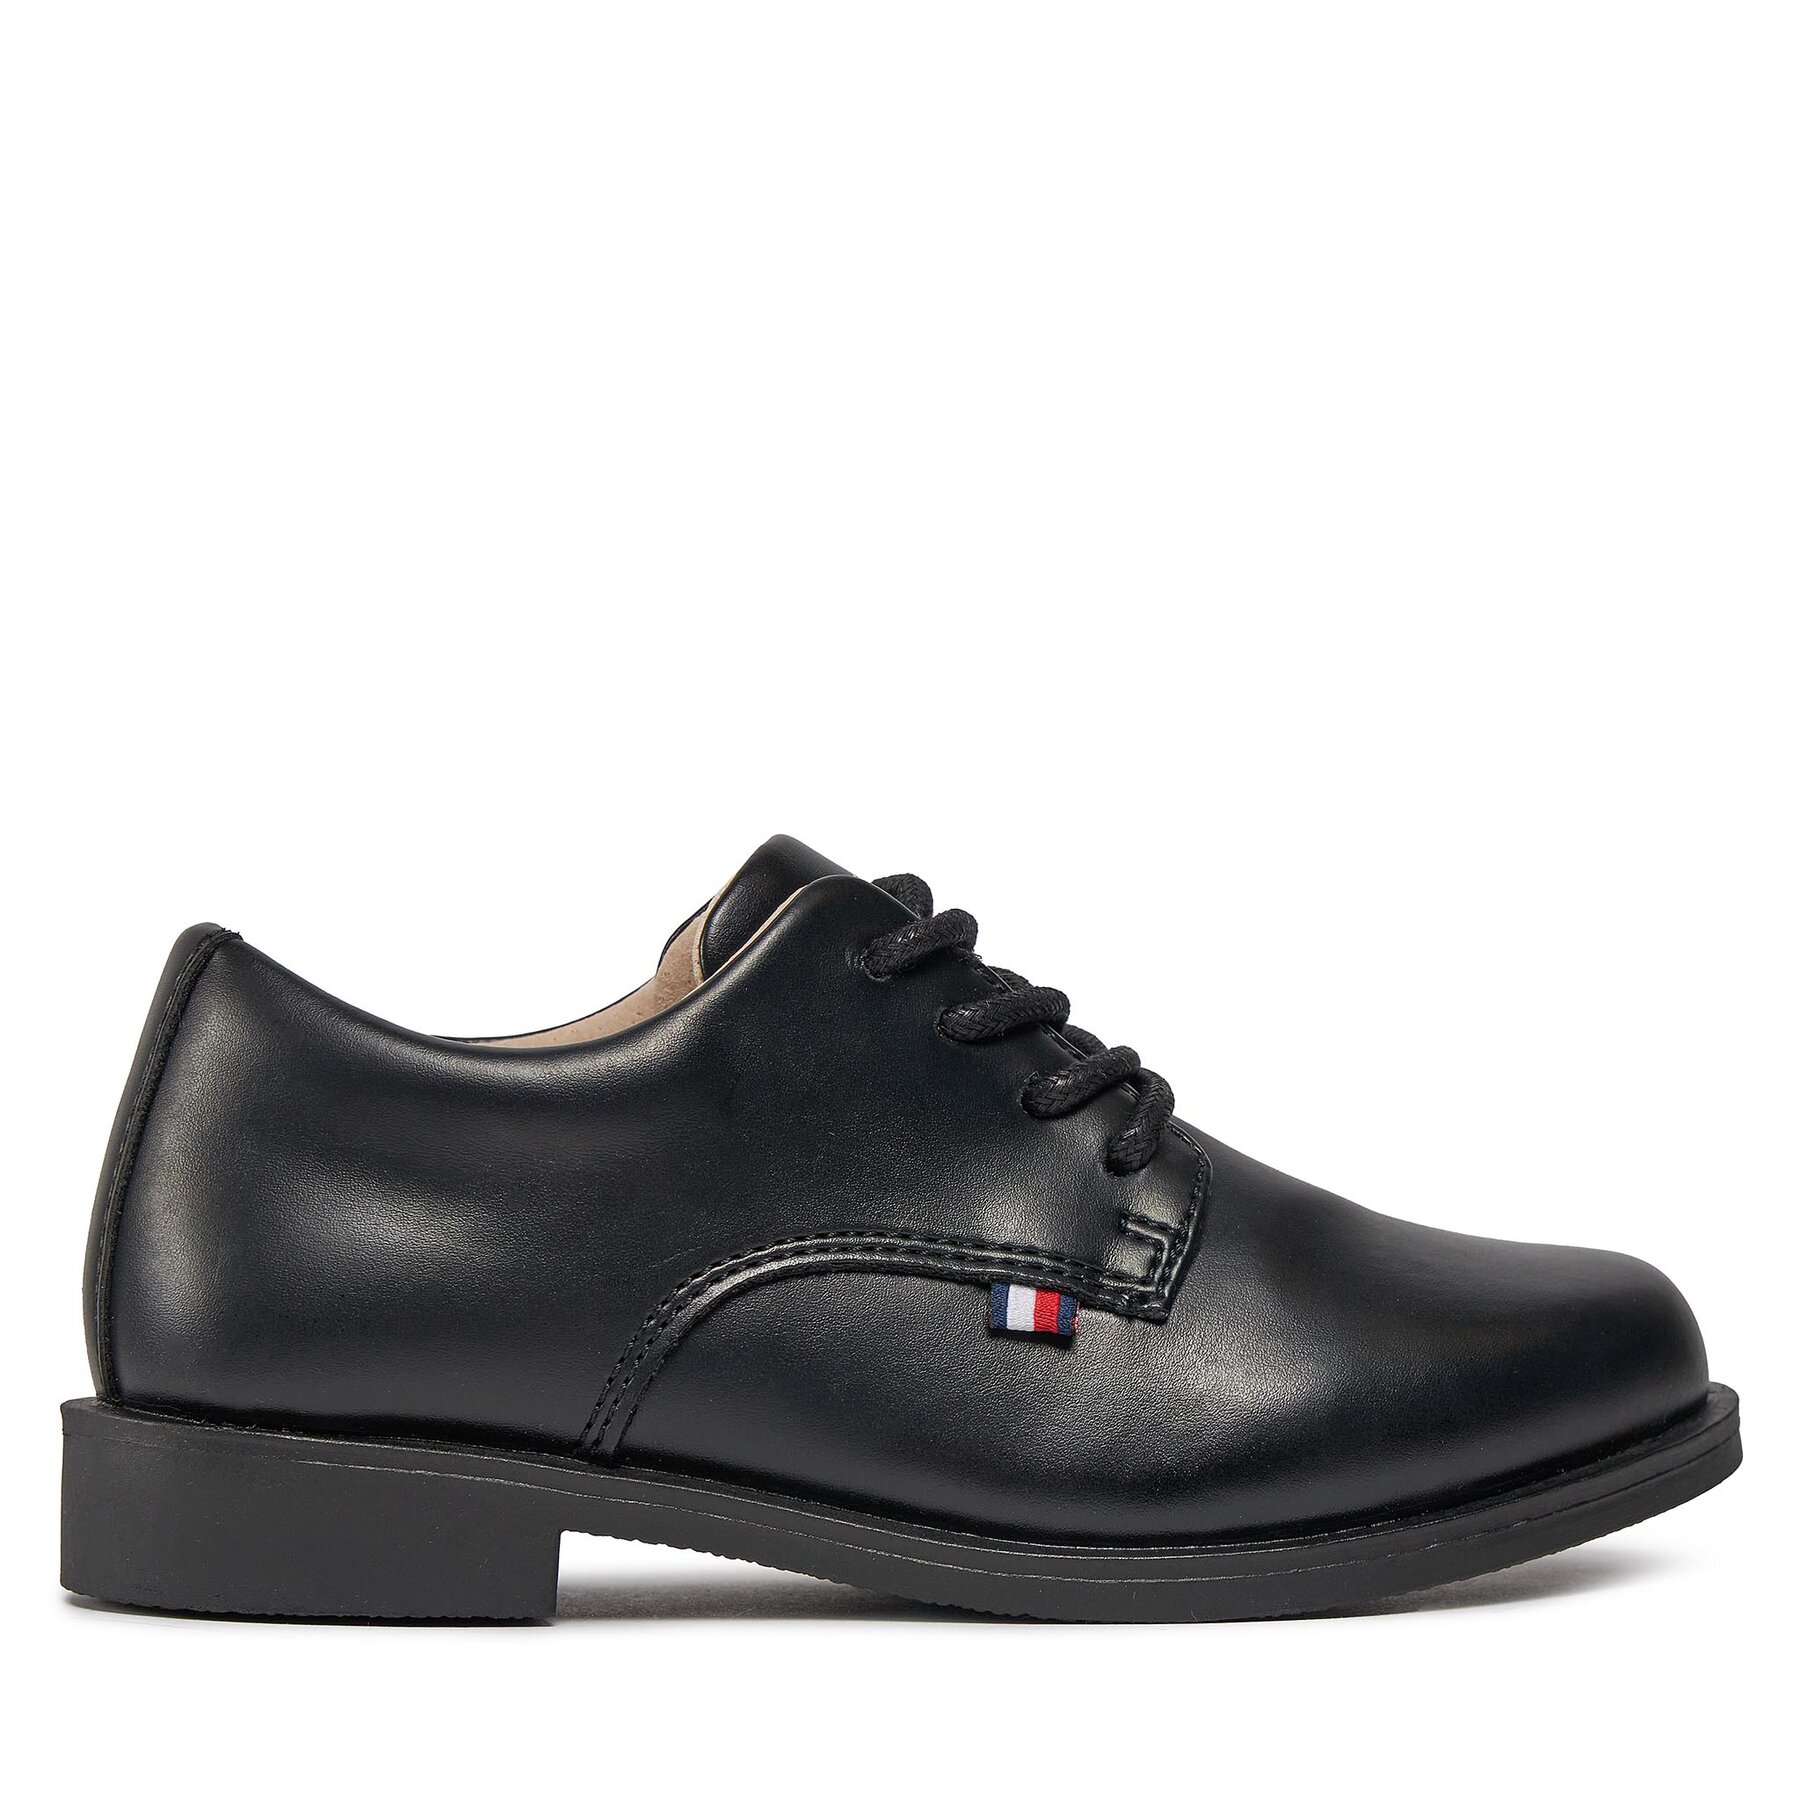 Cipele Tommy Hilfiger Low Cut Lace Up Shoe T3B4-33174-1355 Black 999